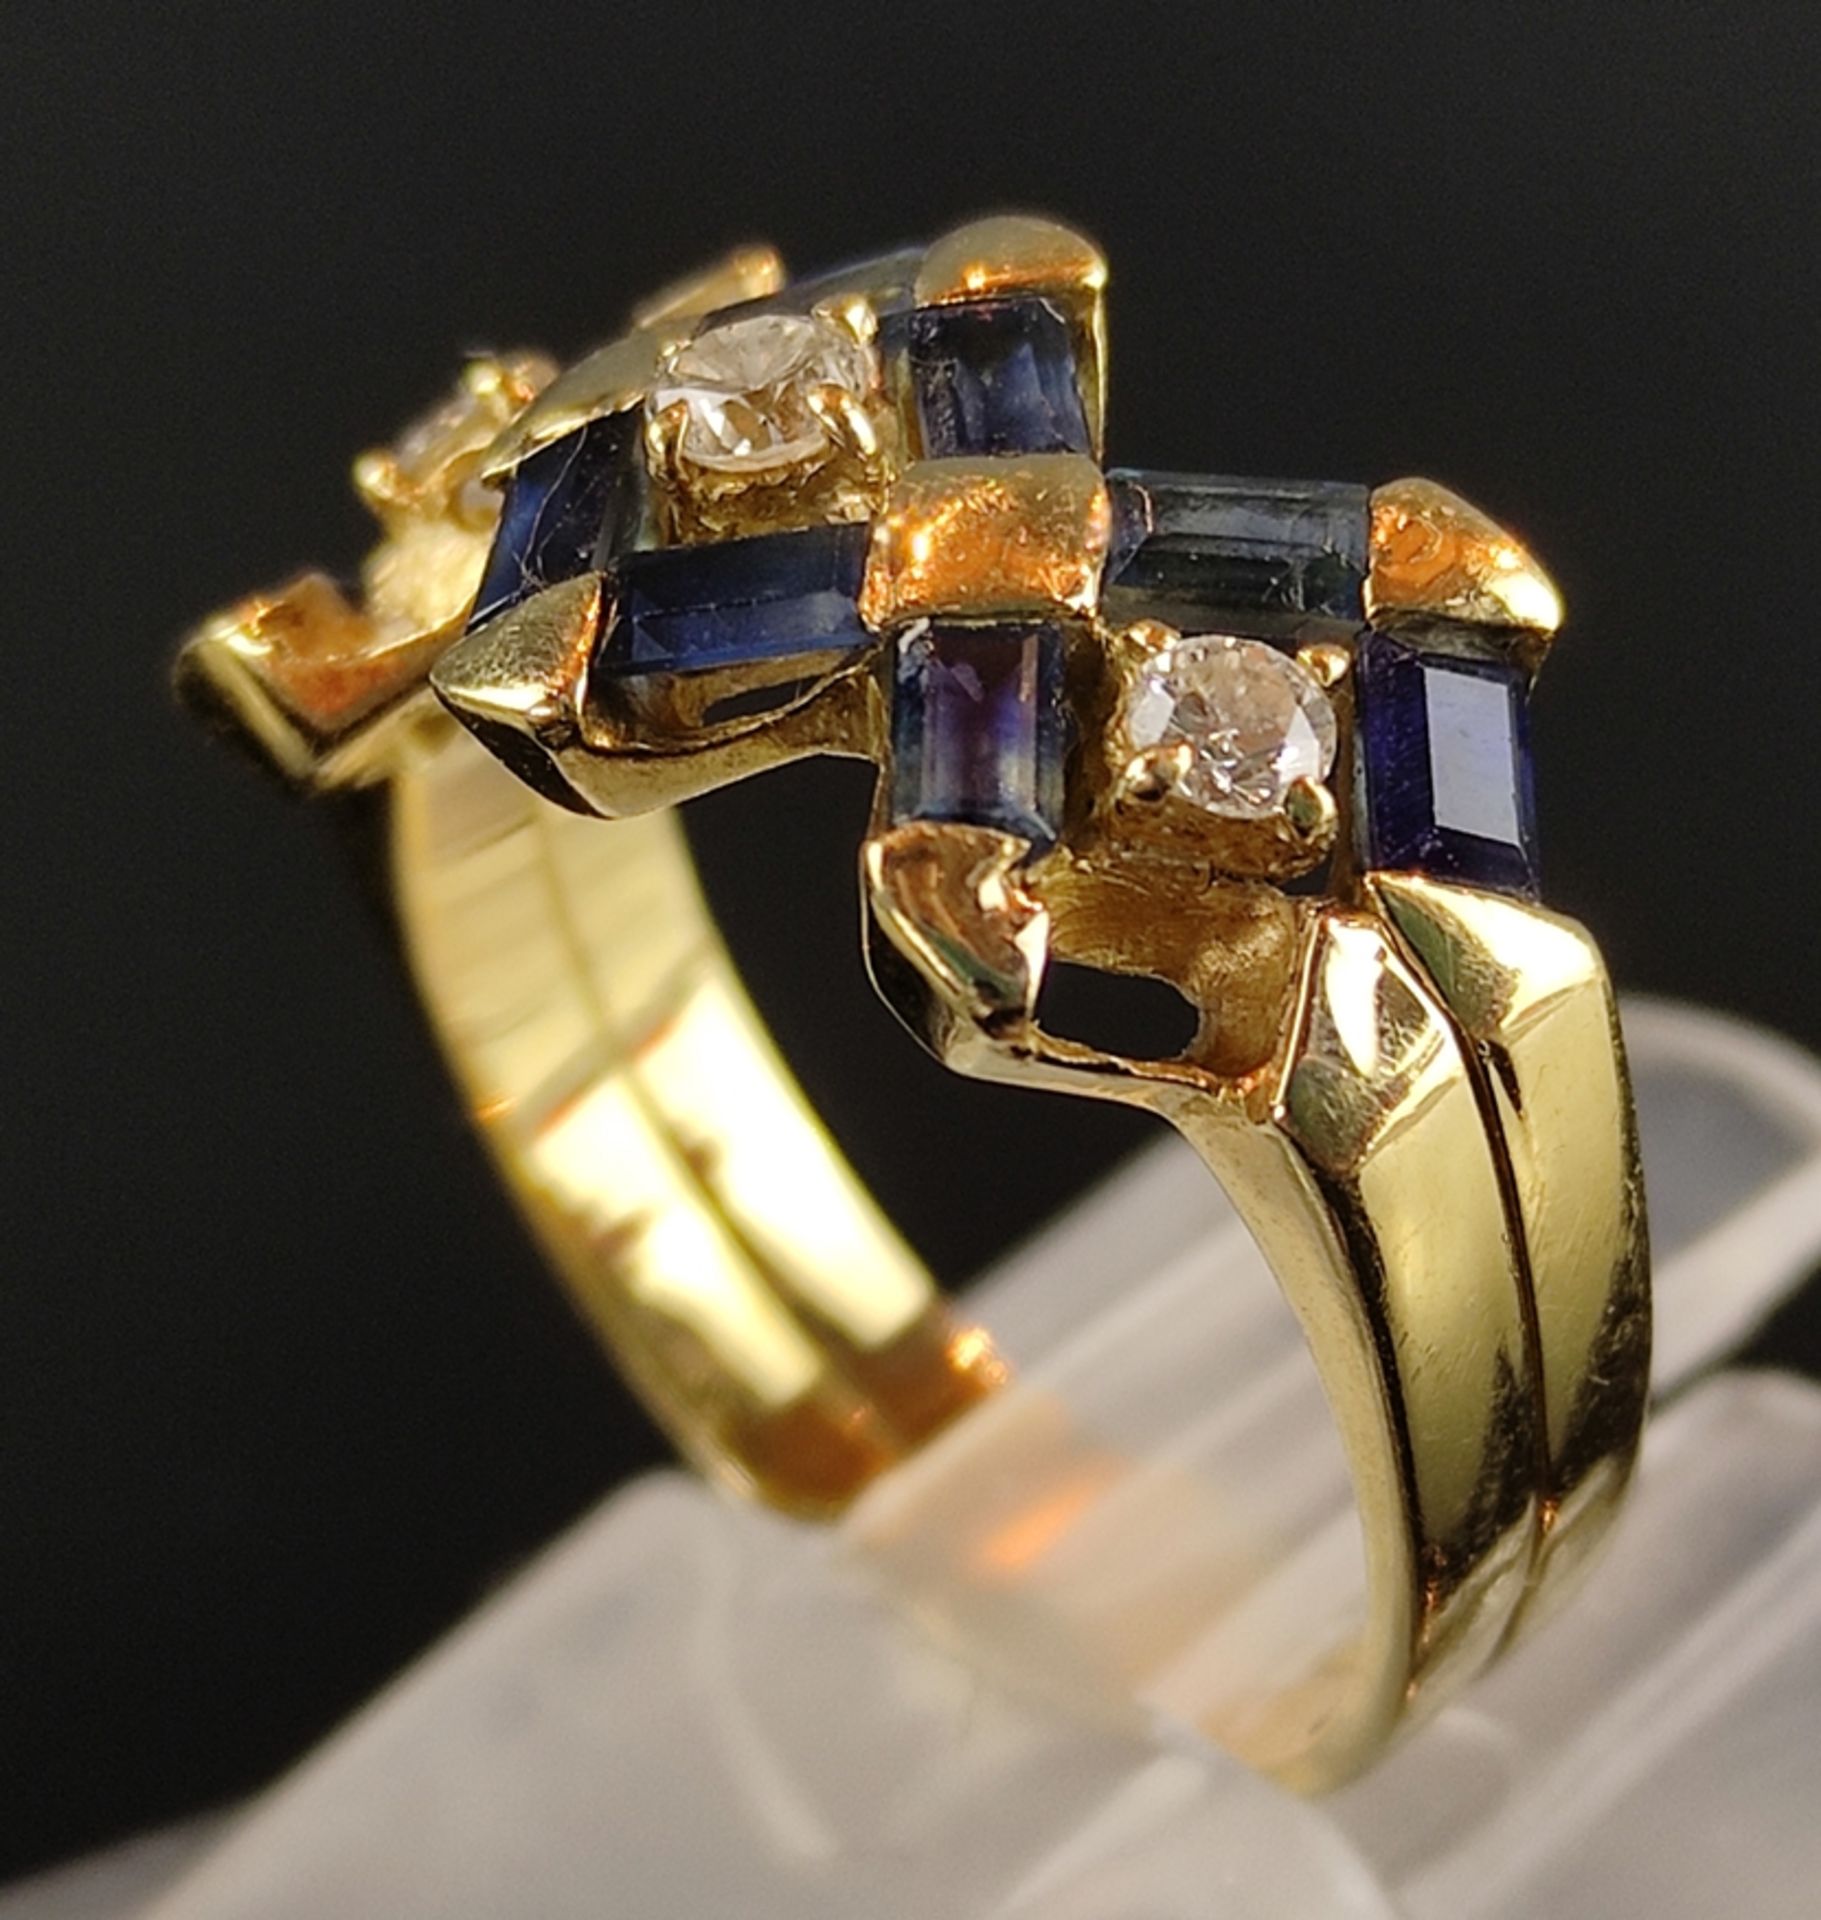 Ring, Saphir und 3 Brillanten, zusammen um 0,15ct, 750/18K Gelbgold, 5,9g, Größe 54, 3 Saphire fehl - Bild 5 aus 6